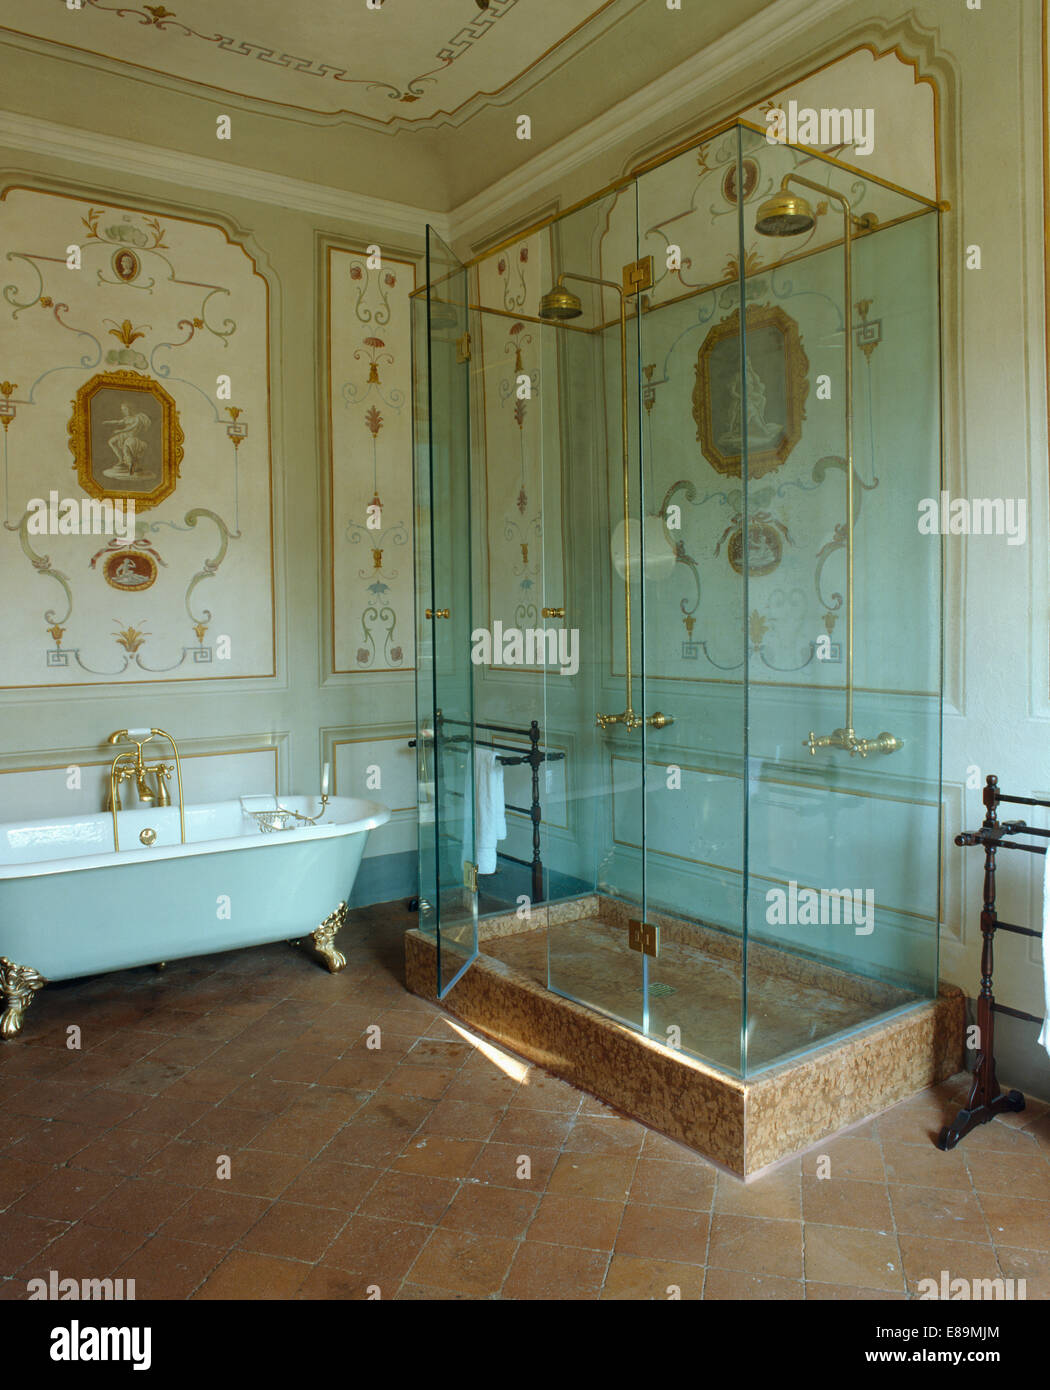 Modernes Glas Schrank und Roll-Top Dusche im Badezimmer der Toskana Palazzo  mit Terrakotta geflieste Boden Stockfotografie - Alamy